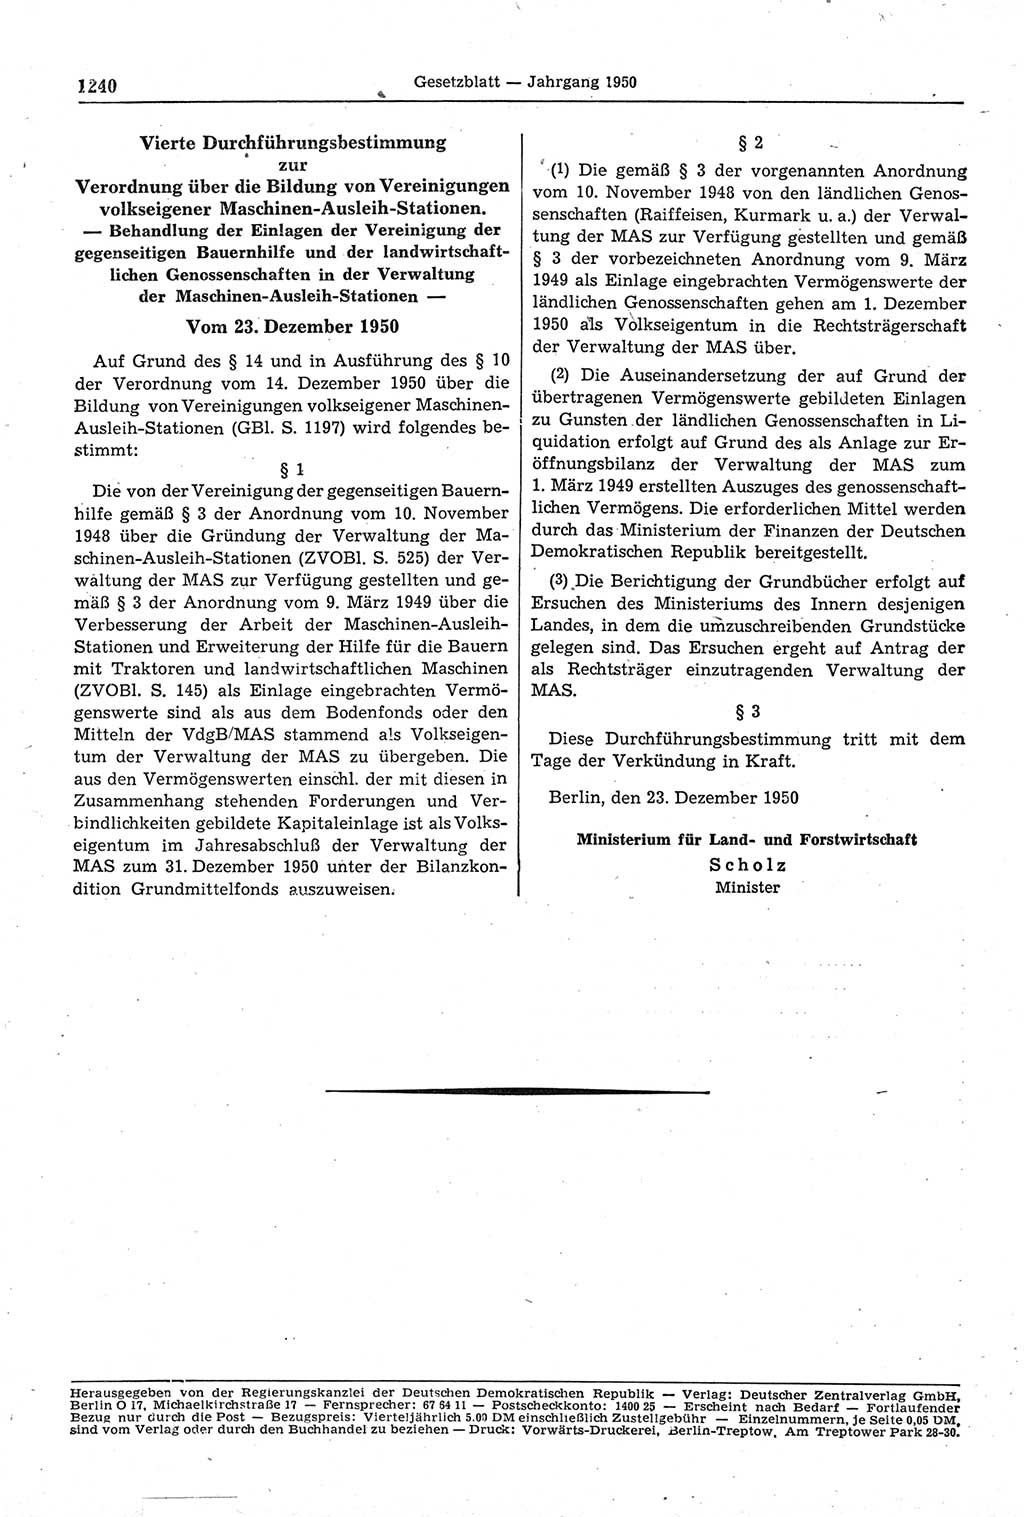 Gesetzblatt (GBl.) der Deutschen Demokratischen Republik (DDR) 1950, Seite 1240 (GBl. DDR 1950, S. 1240)